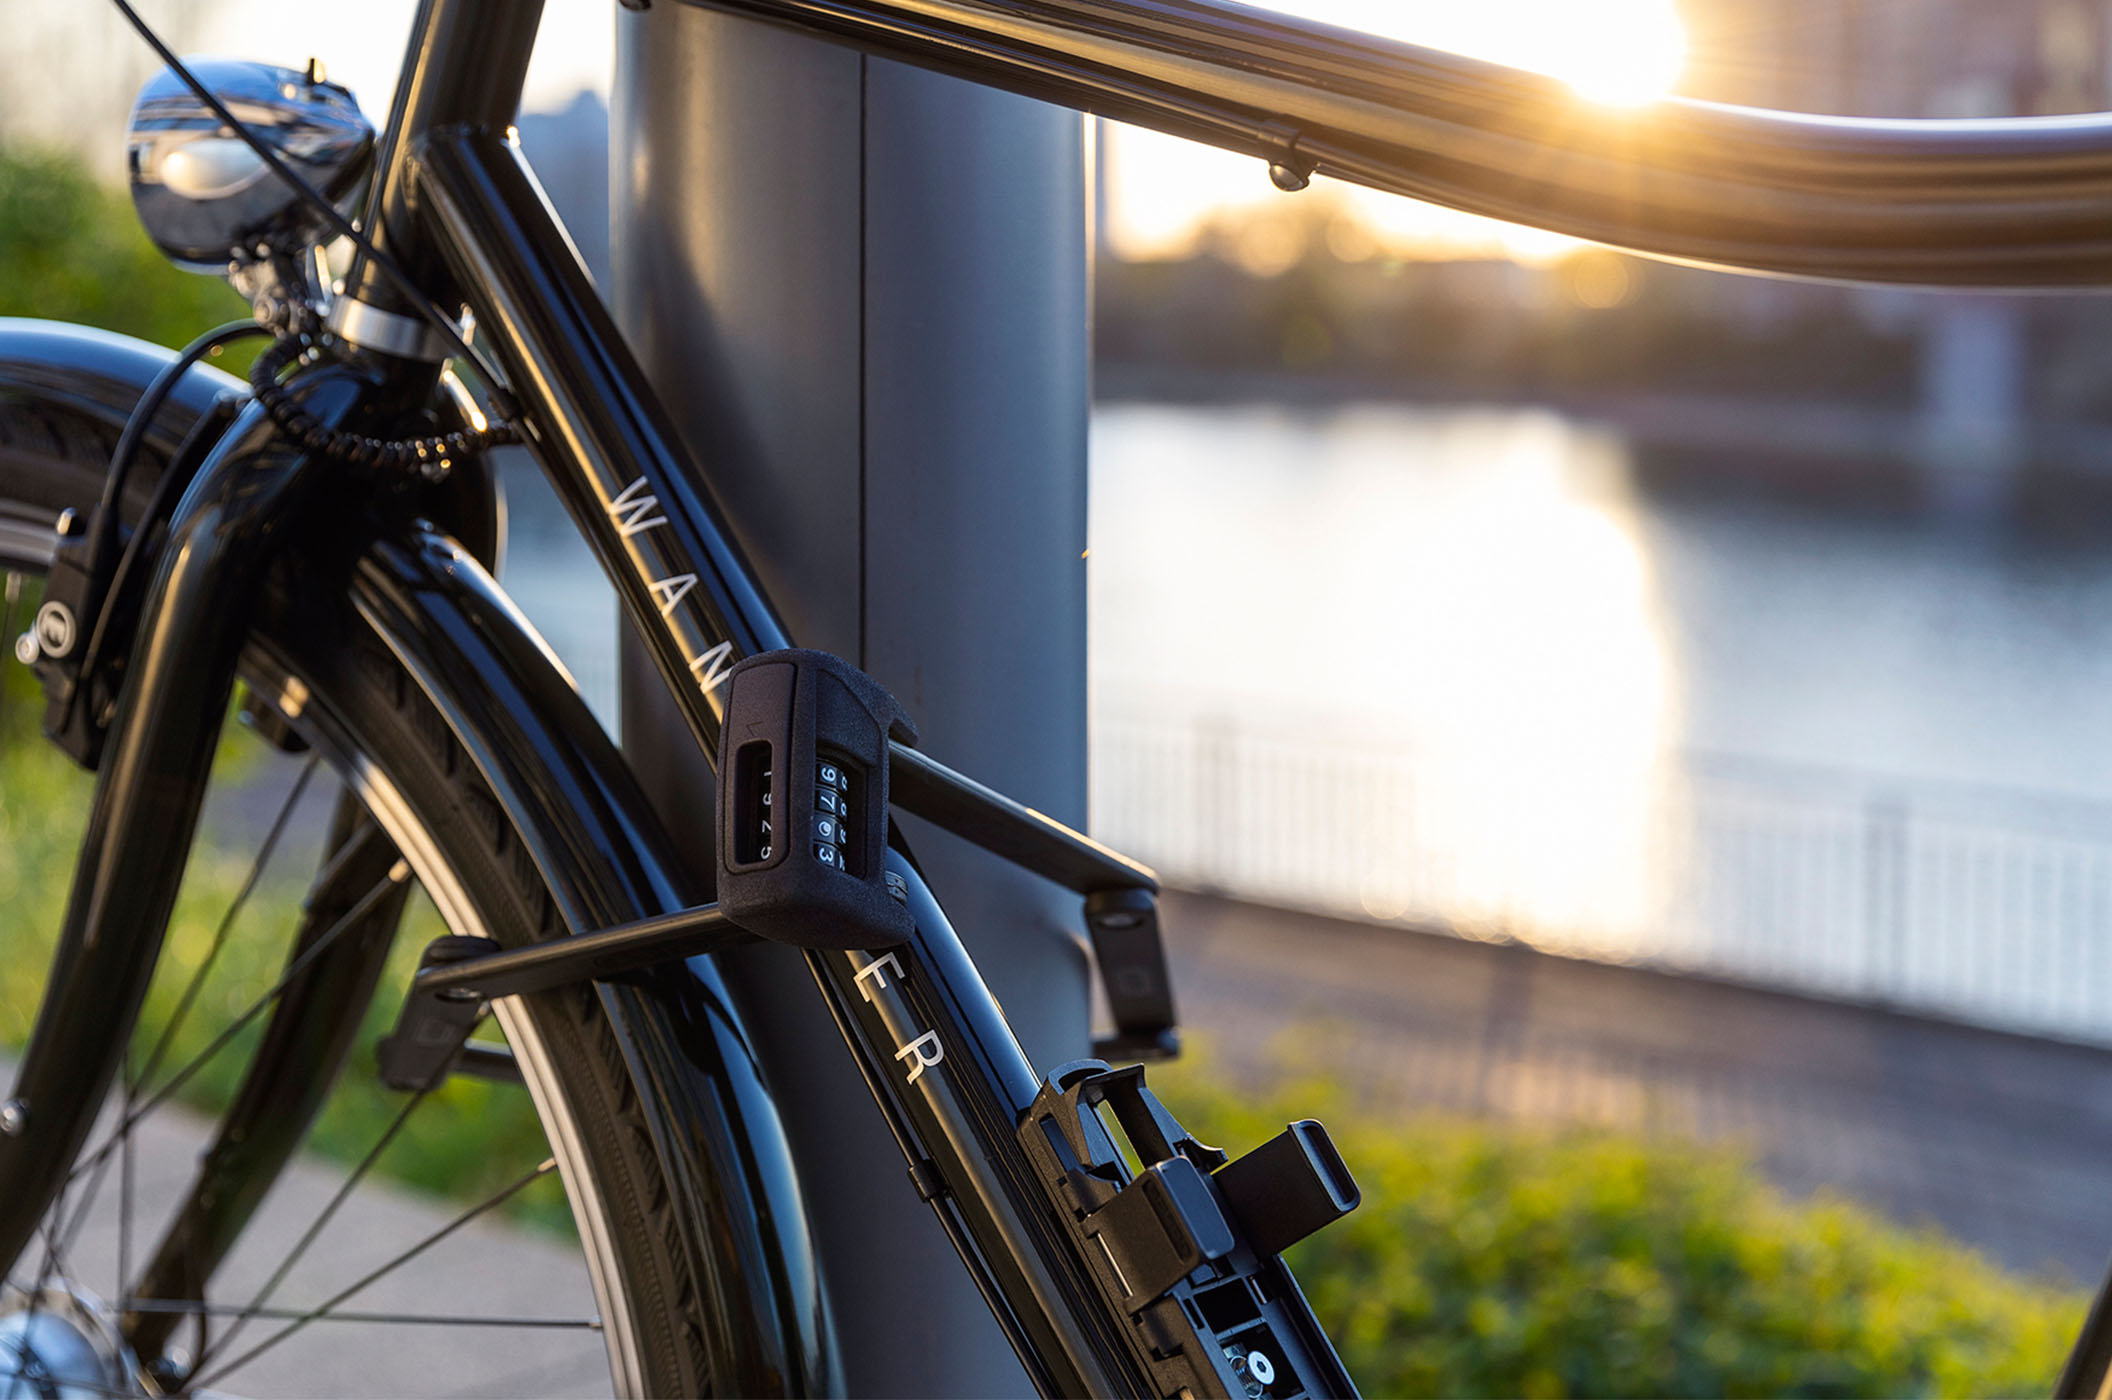 Die bewährte Bügelschlosskonstruktion trifft auf digitale Technologie, entstanden ist ein Fahrradschloss mit Smartphone-Steuerung.